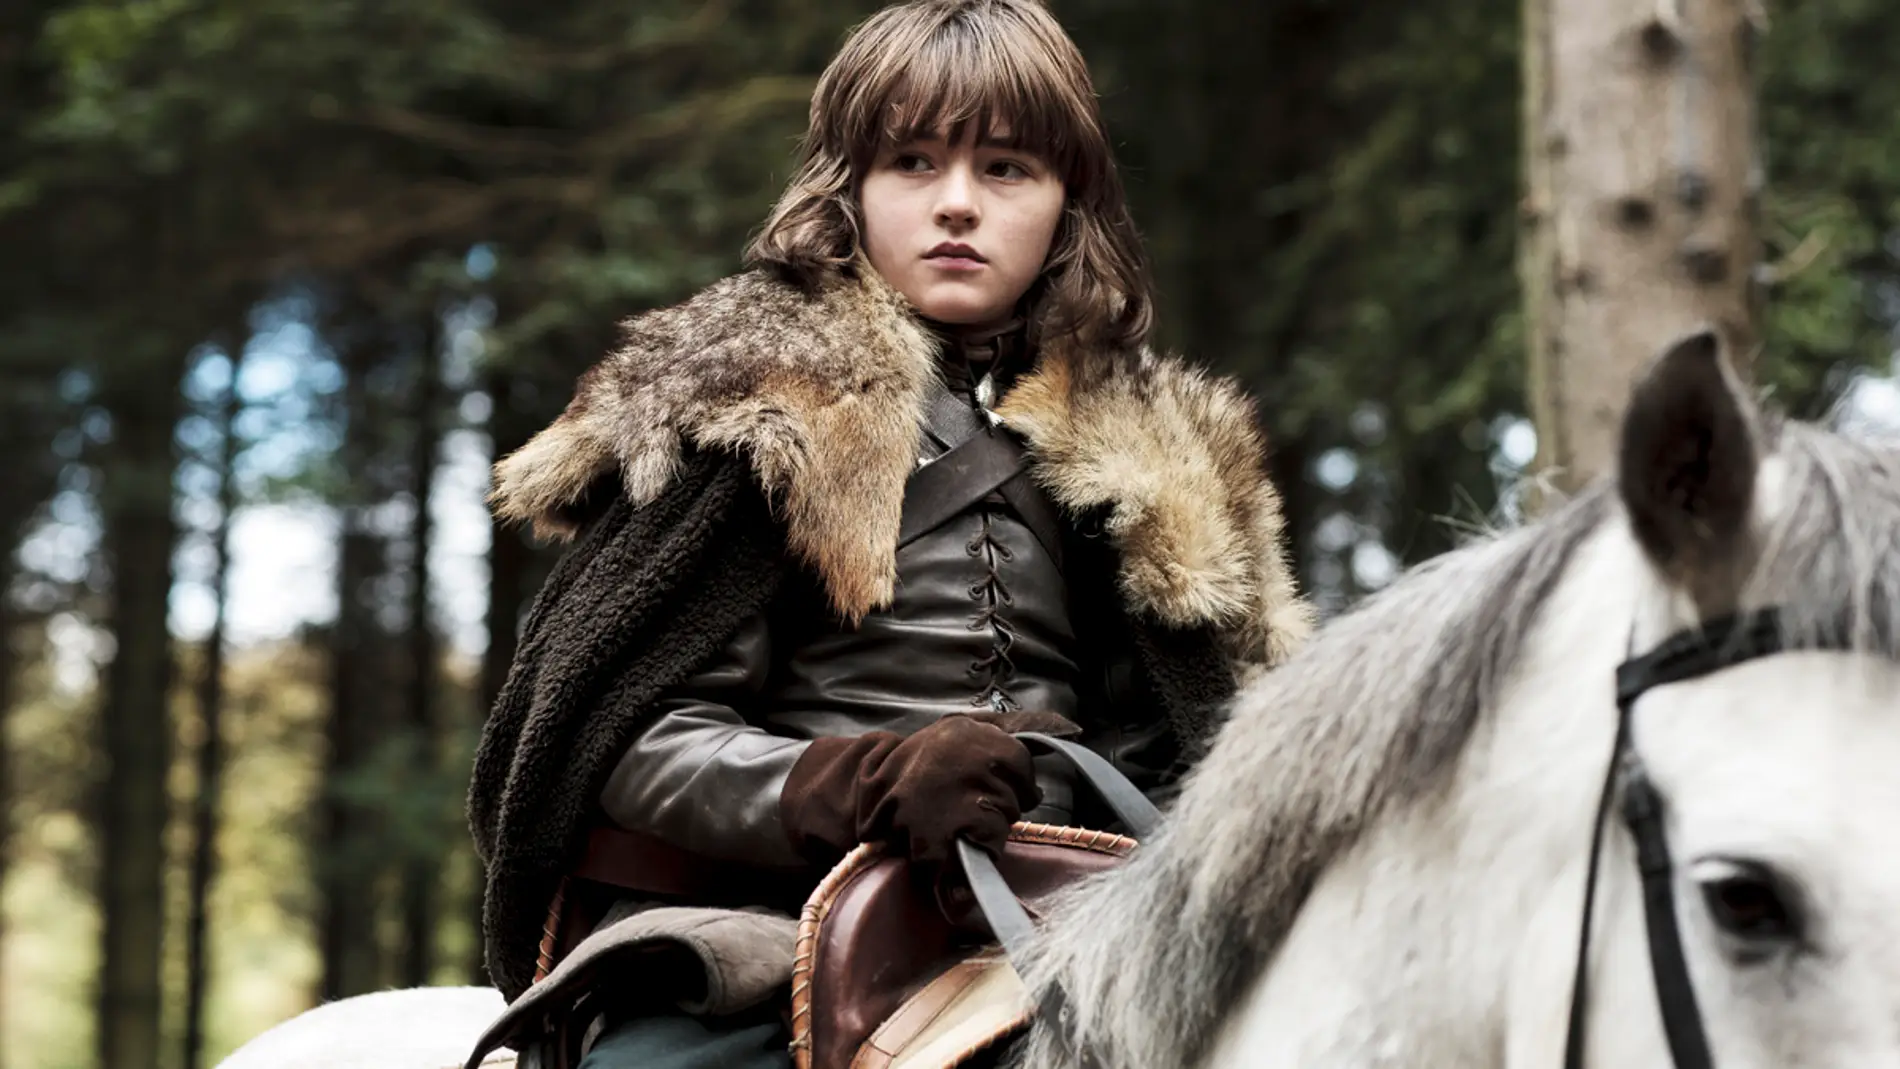 Juego de Tronos: el actor de Bran Stark habla sobre el final de su personaje